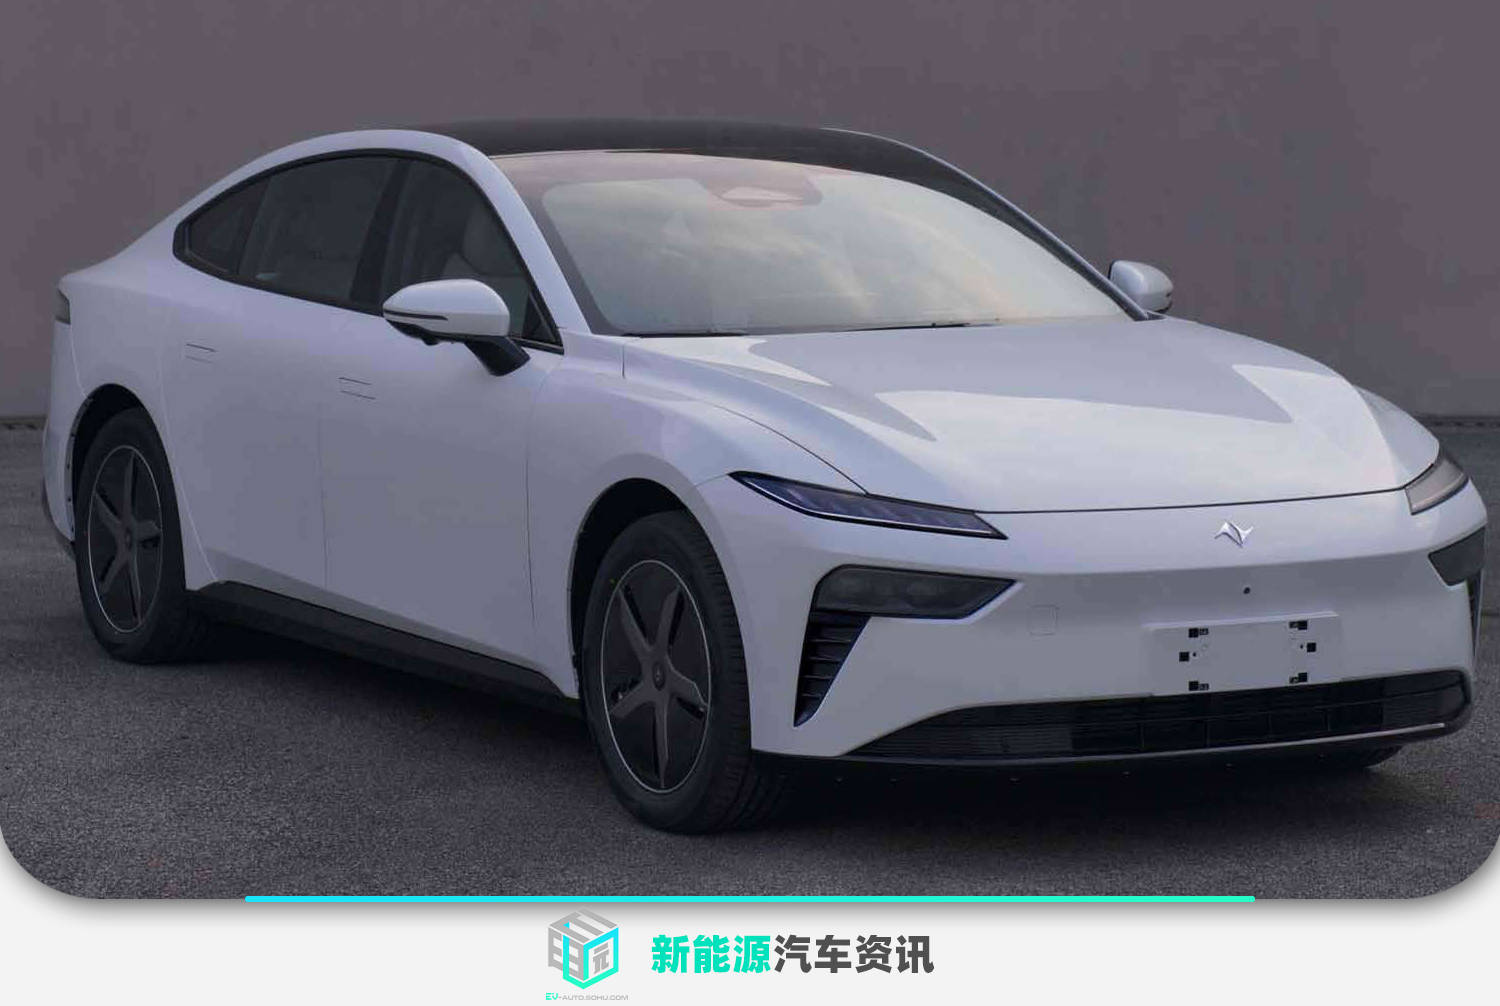 东风eπ系列首款新车申报图 定位中大型纯电轿车